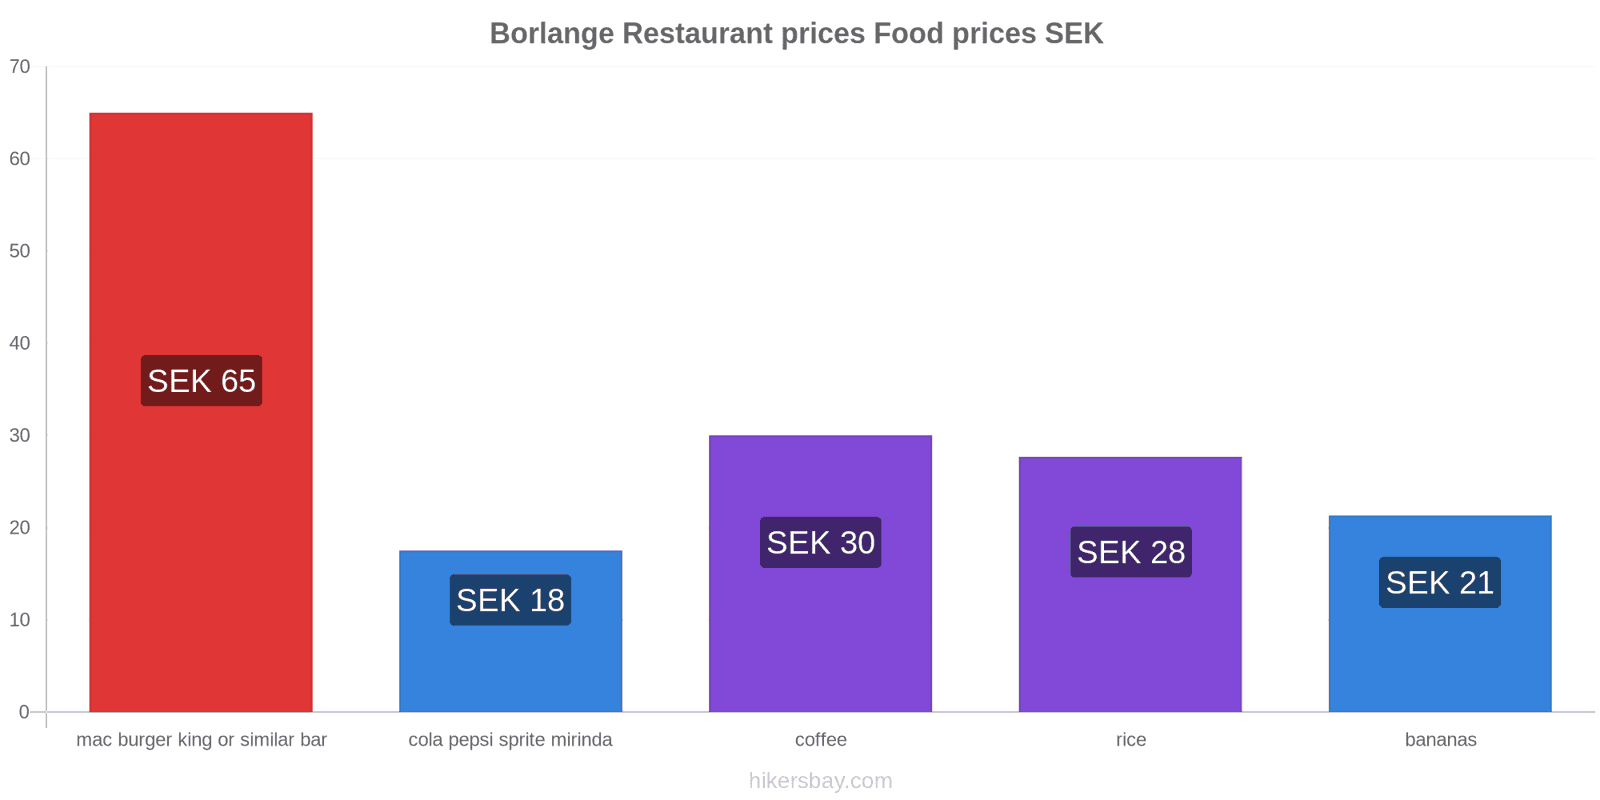 Borlange price changes hikersbay.com